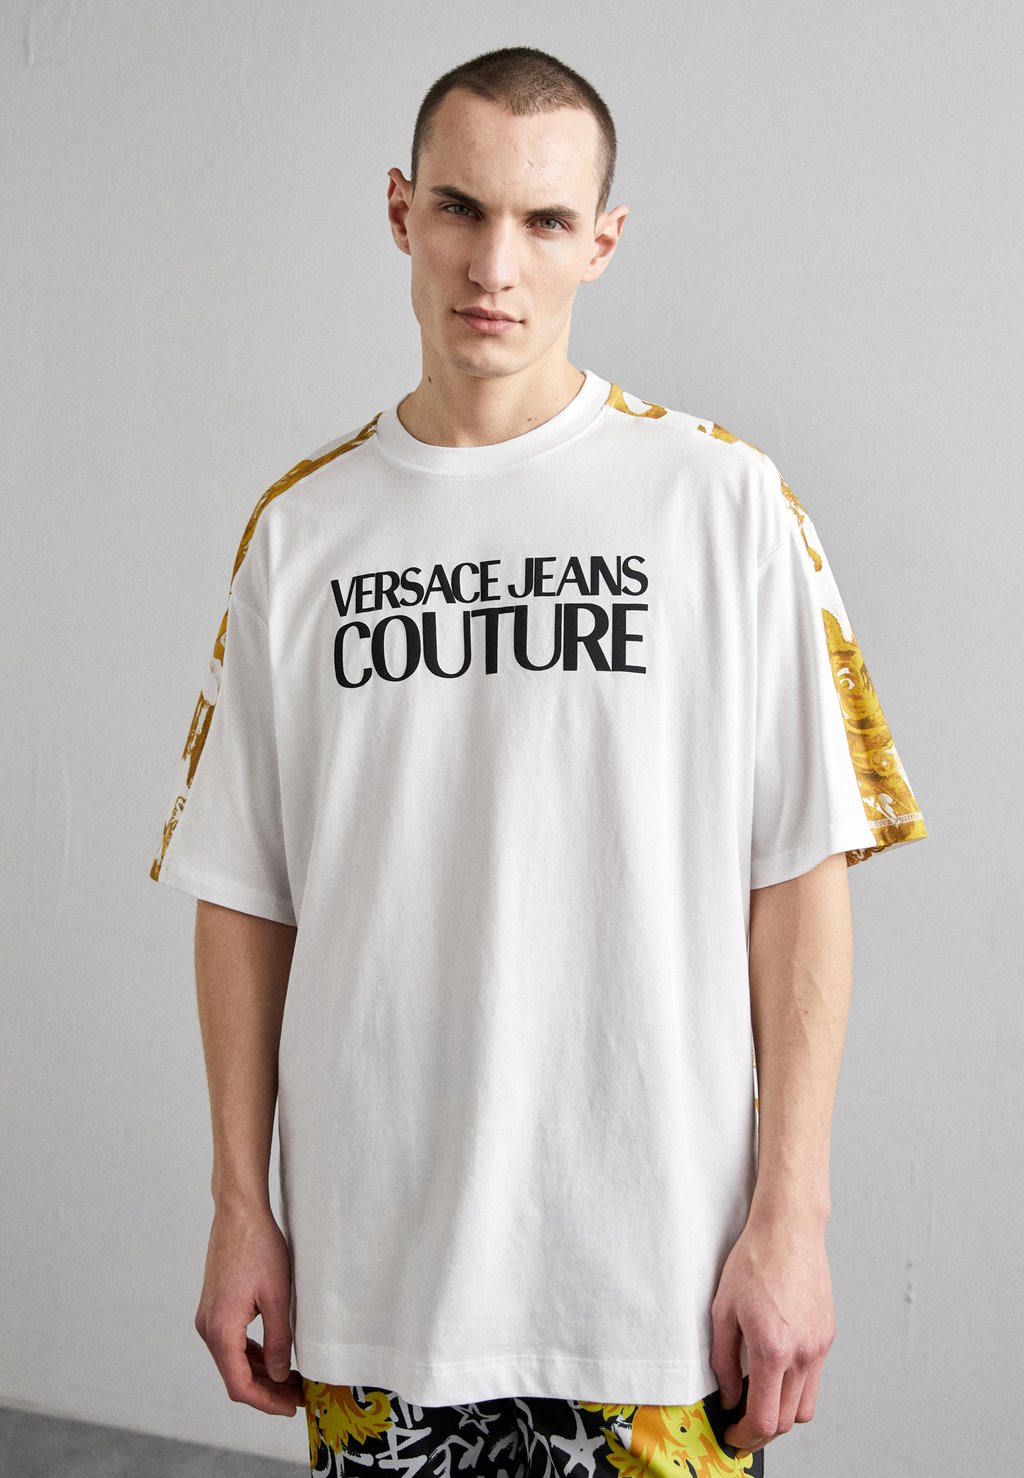 Футболка с принтом Logo Versace Jeans Couture, цвет white/gold-coloured футболка с принтом logo versace jeans couture цвет white gold coloured